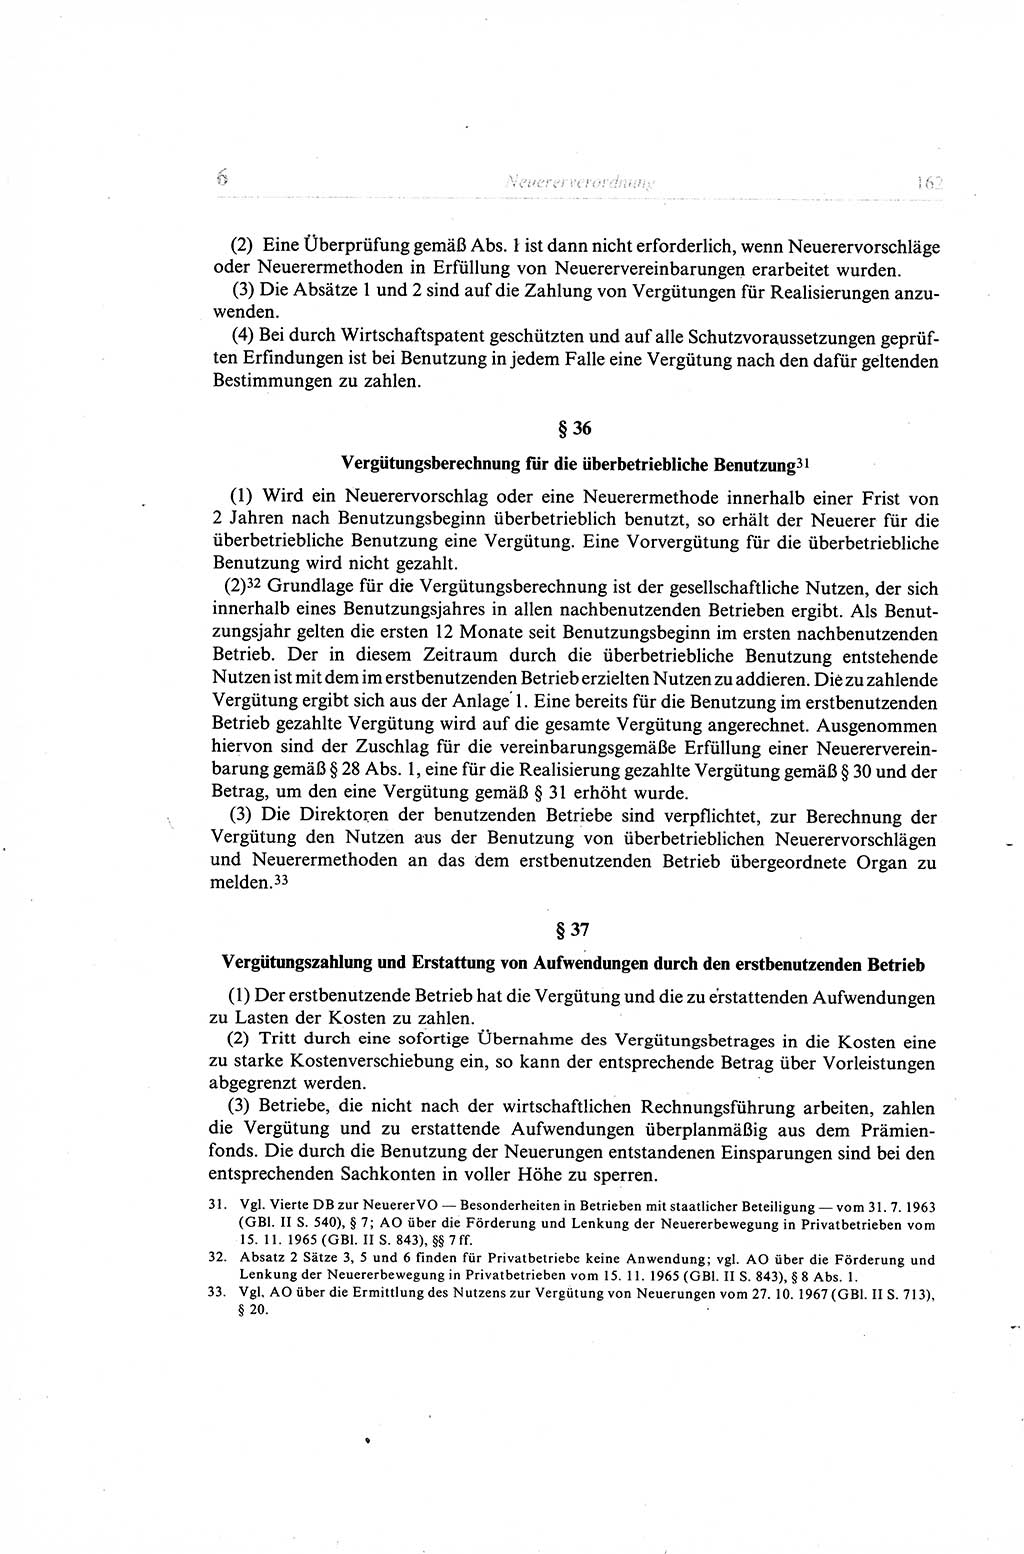 Gesetzbuch der Arbeit (GBA) und andere ausgewählte rechtliche Bestimmungen [Deutsche Demokratische Republik (DDR)] 1968, Seite 162 (GBA DDR 1968, S. 162)